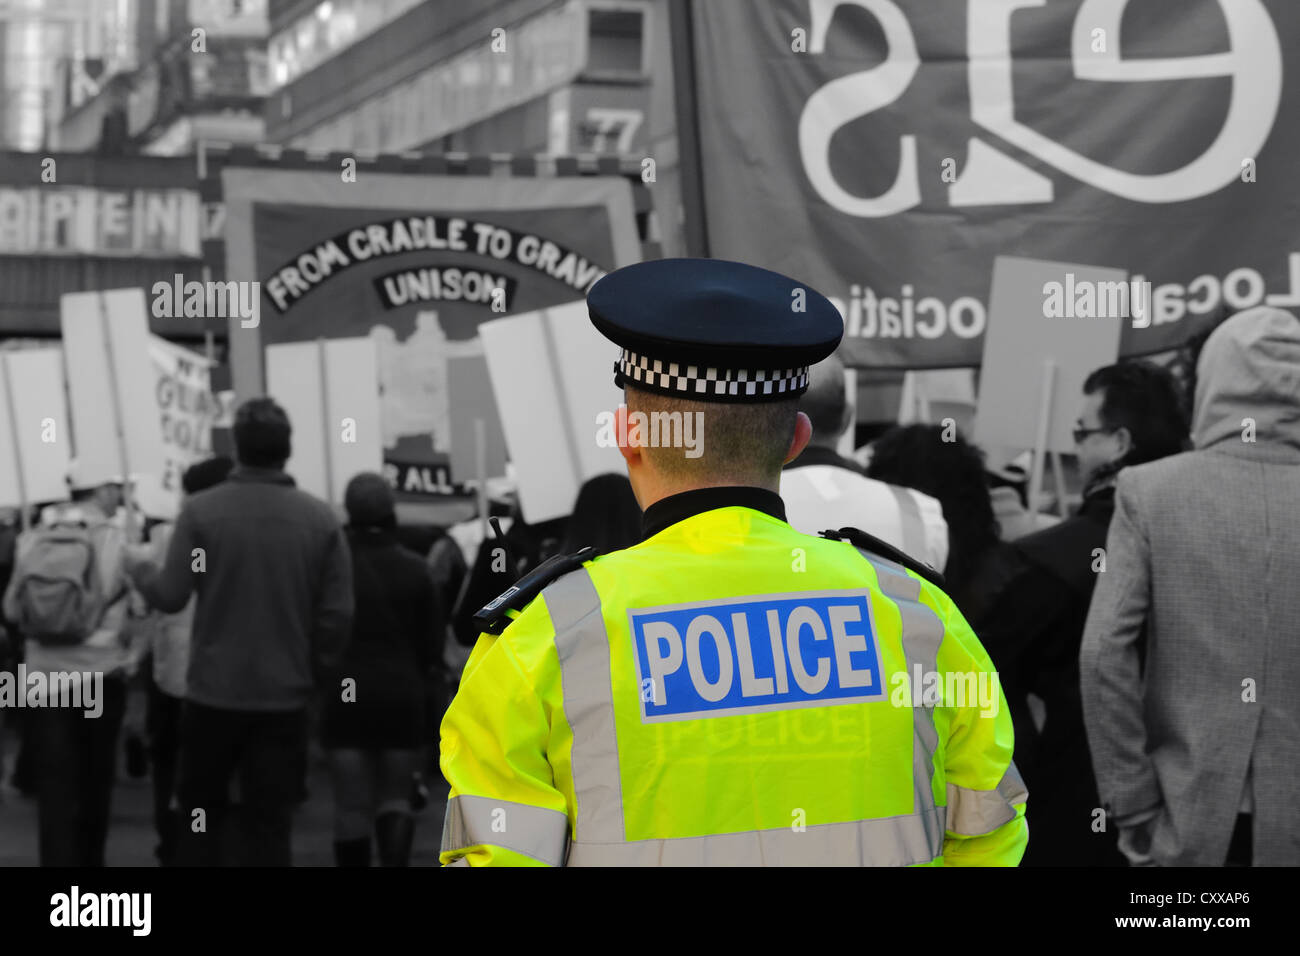 Schottische Polizei Polizist Überwachung eines politischen März in Großbritannien. Selektive Färbung Technik angewendet Hi viz Jacke. Stockfoto